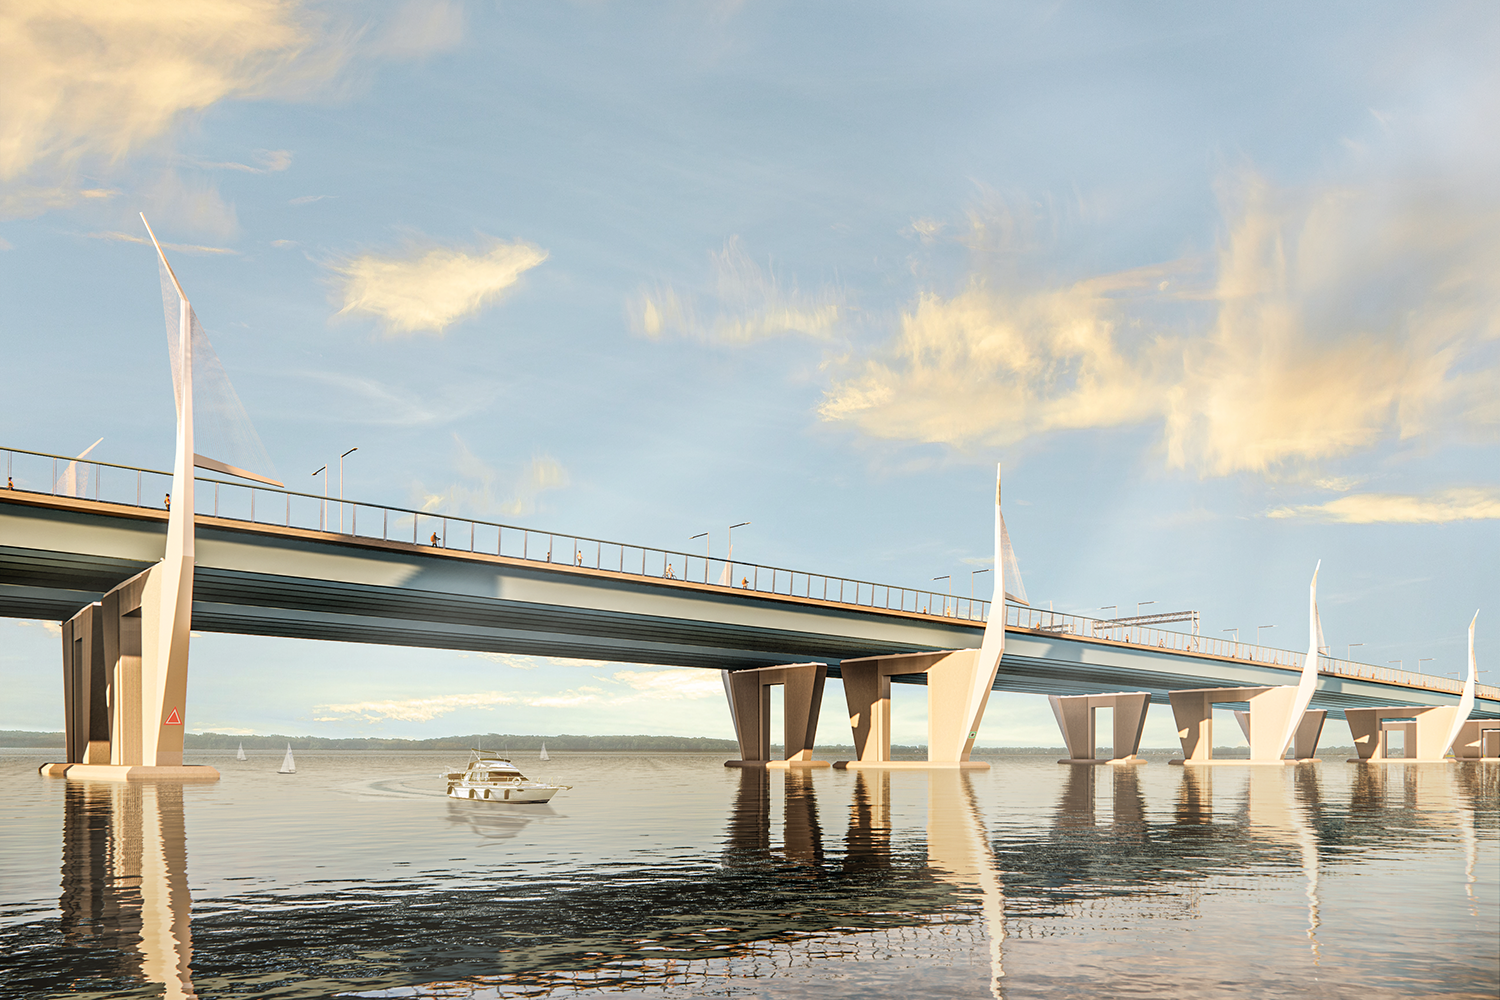 Construction begins on new Île-aux-Tourtes bridge, Transport Quebec confirms